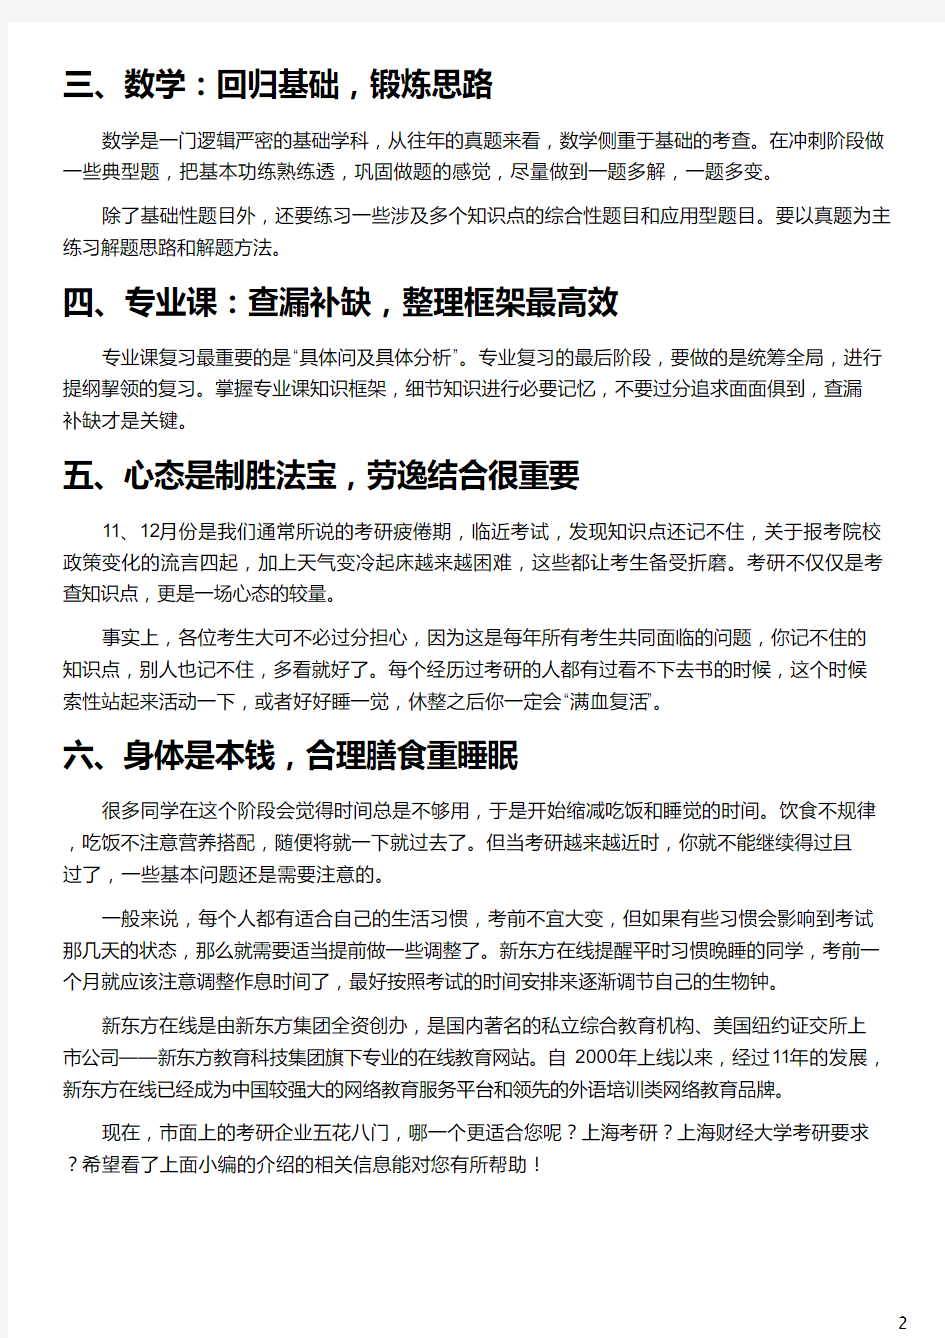 上海考研前要注意什么_上海考研_上海财经大学考研要求_上海大学考研_新东方在线